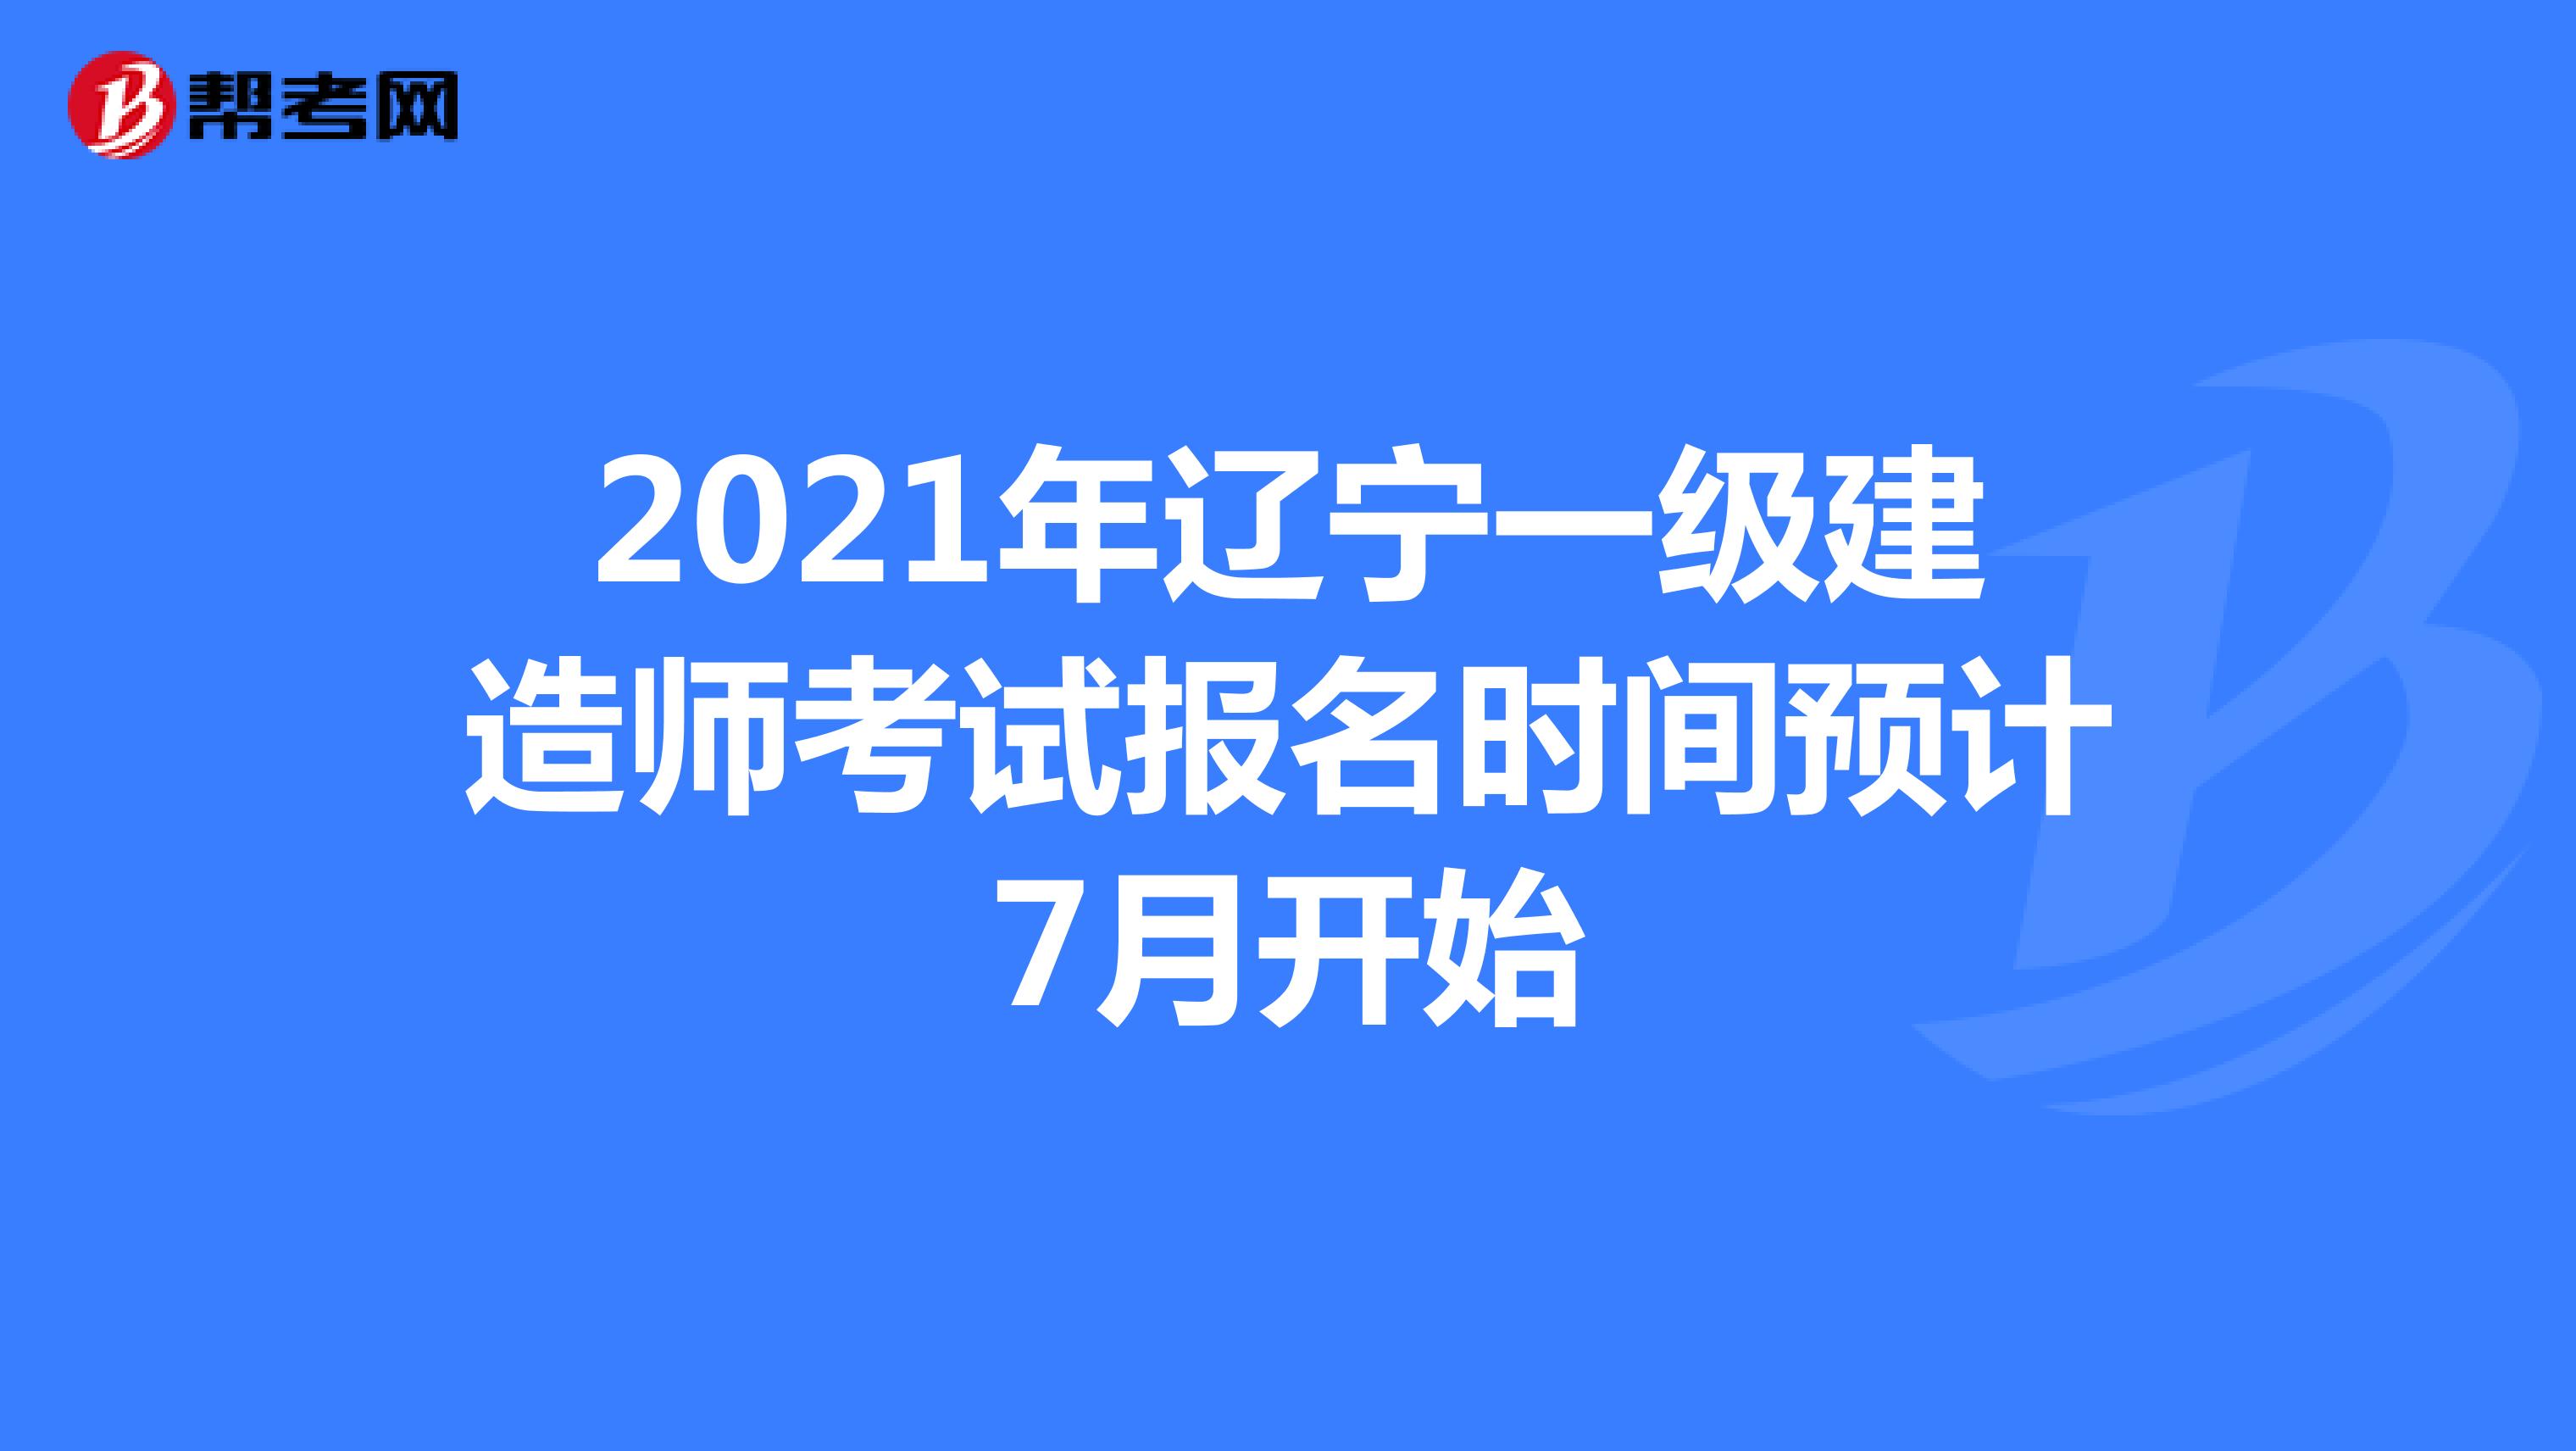 2021年辽宁一级建造师考试报名时间预计7月开始